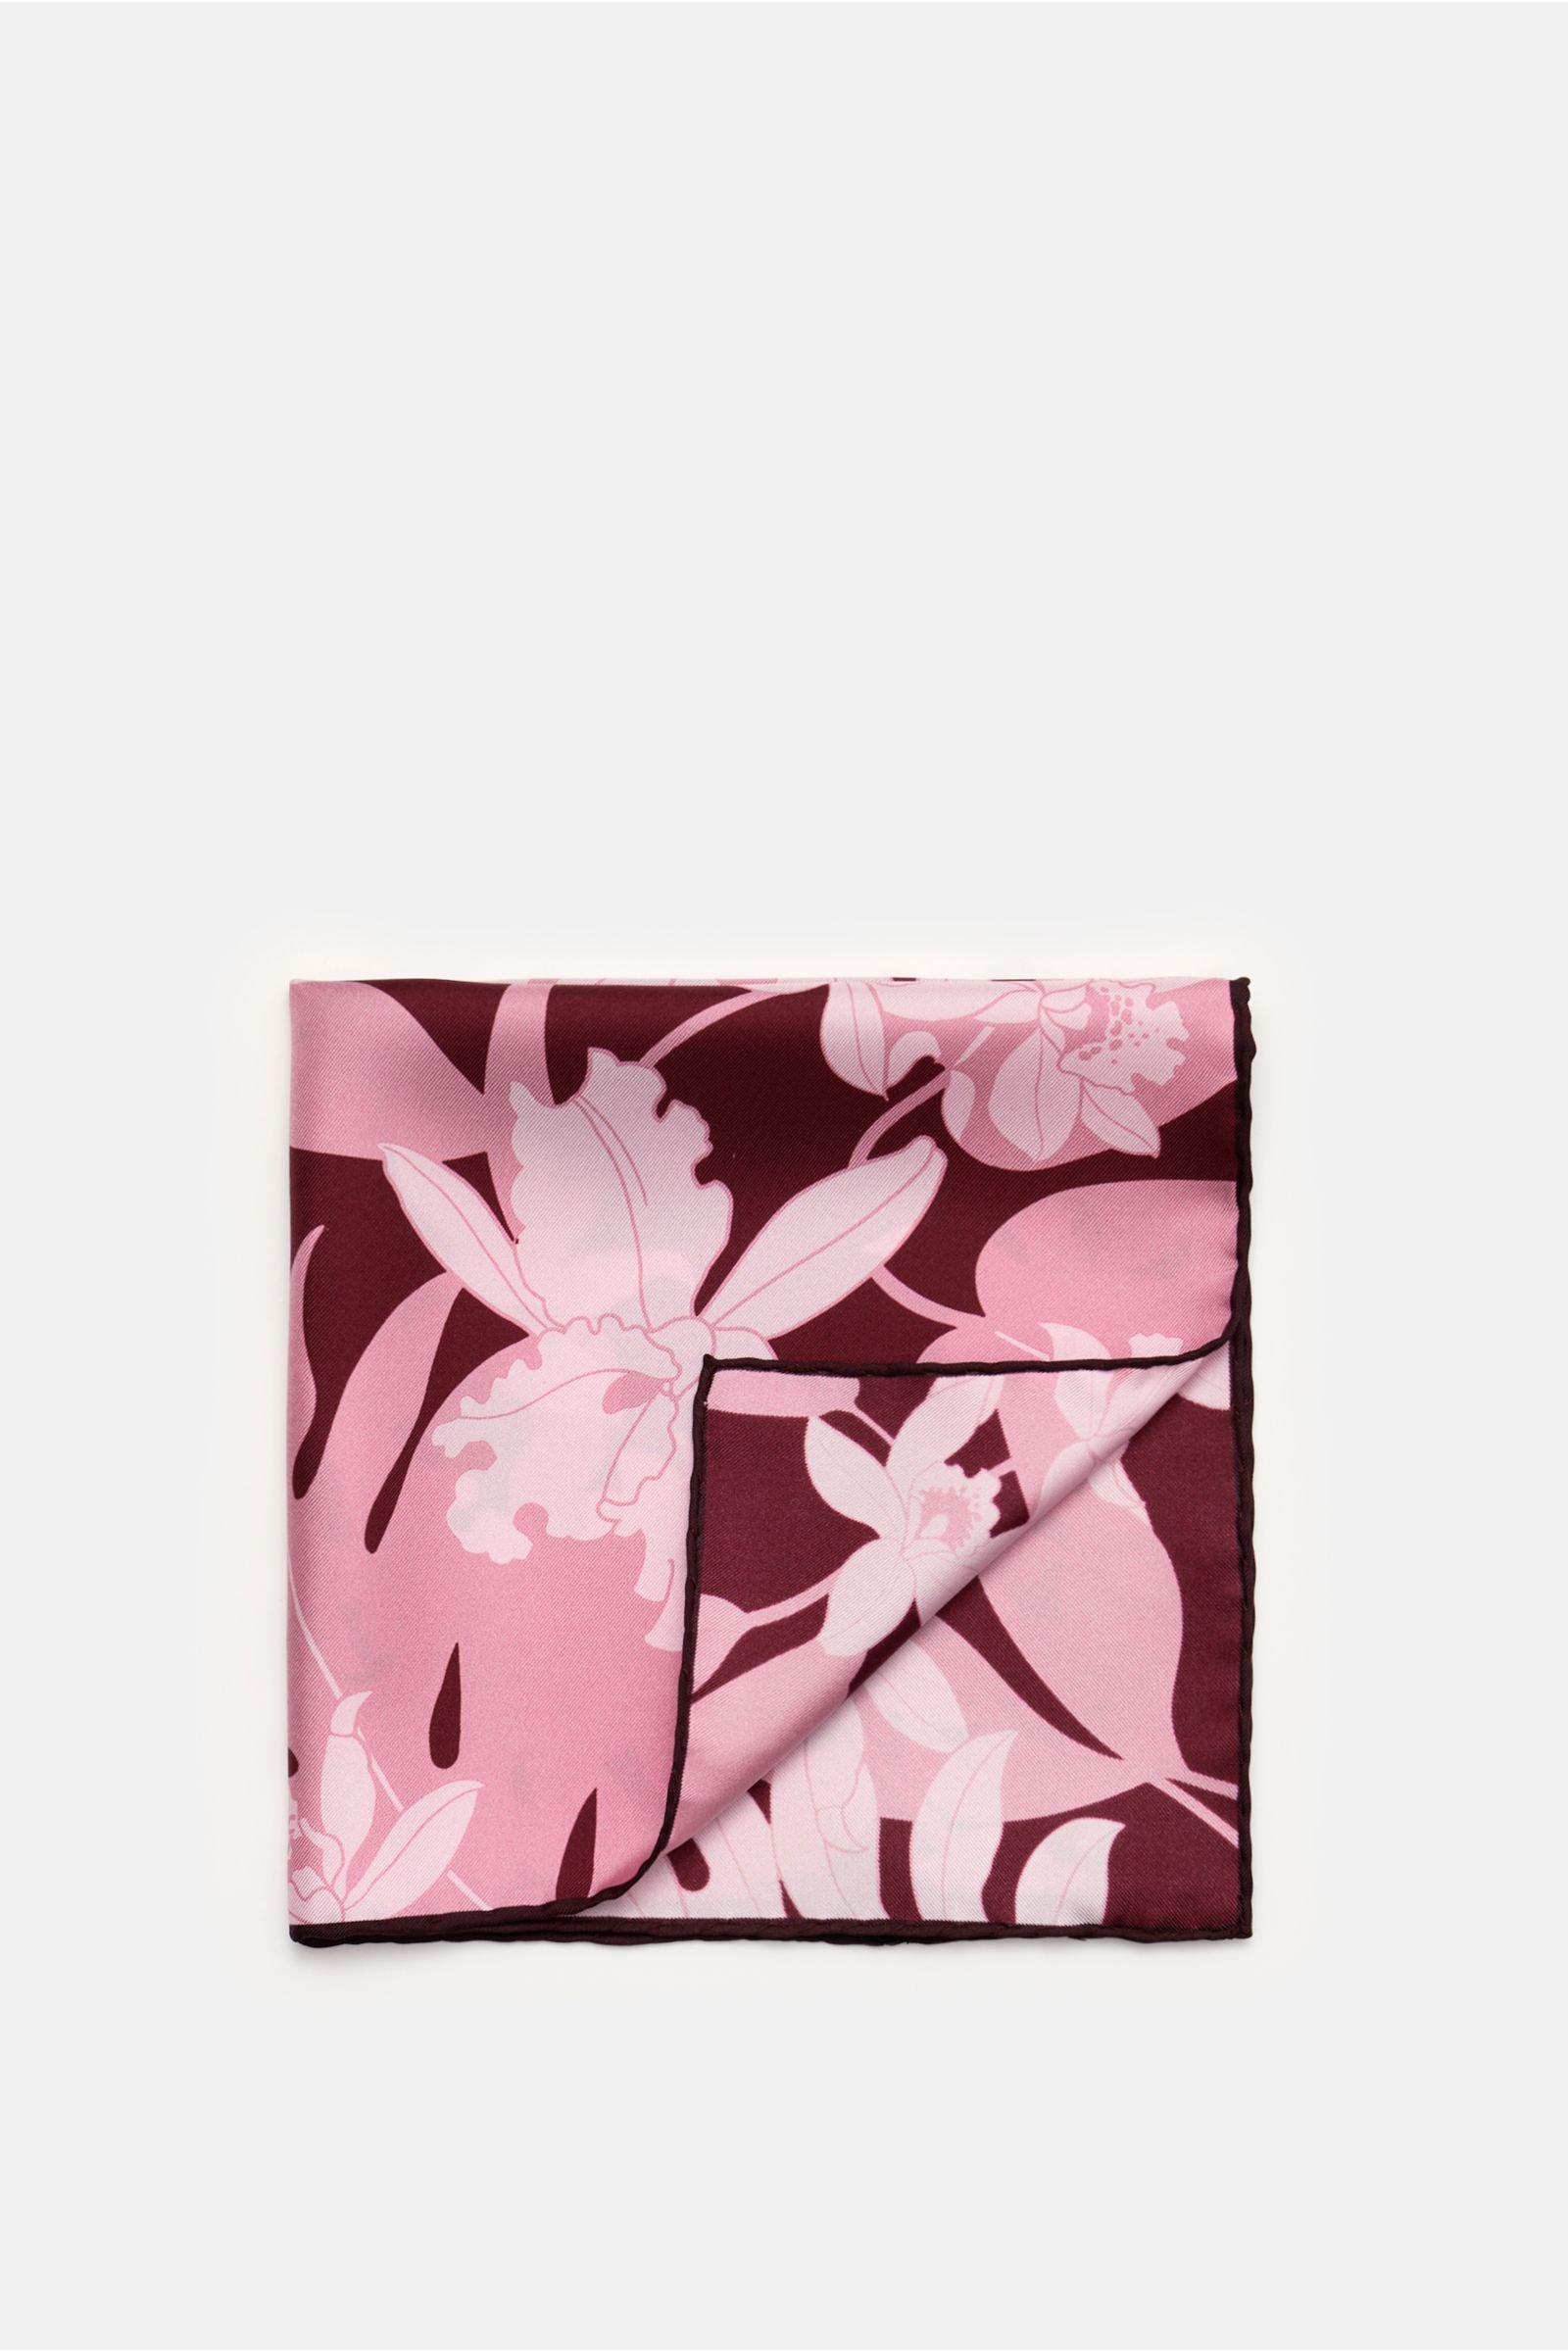 Pocket square rose/burgundy patterned